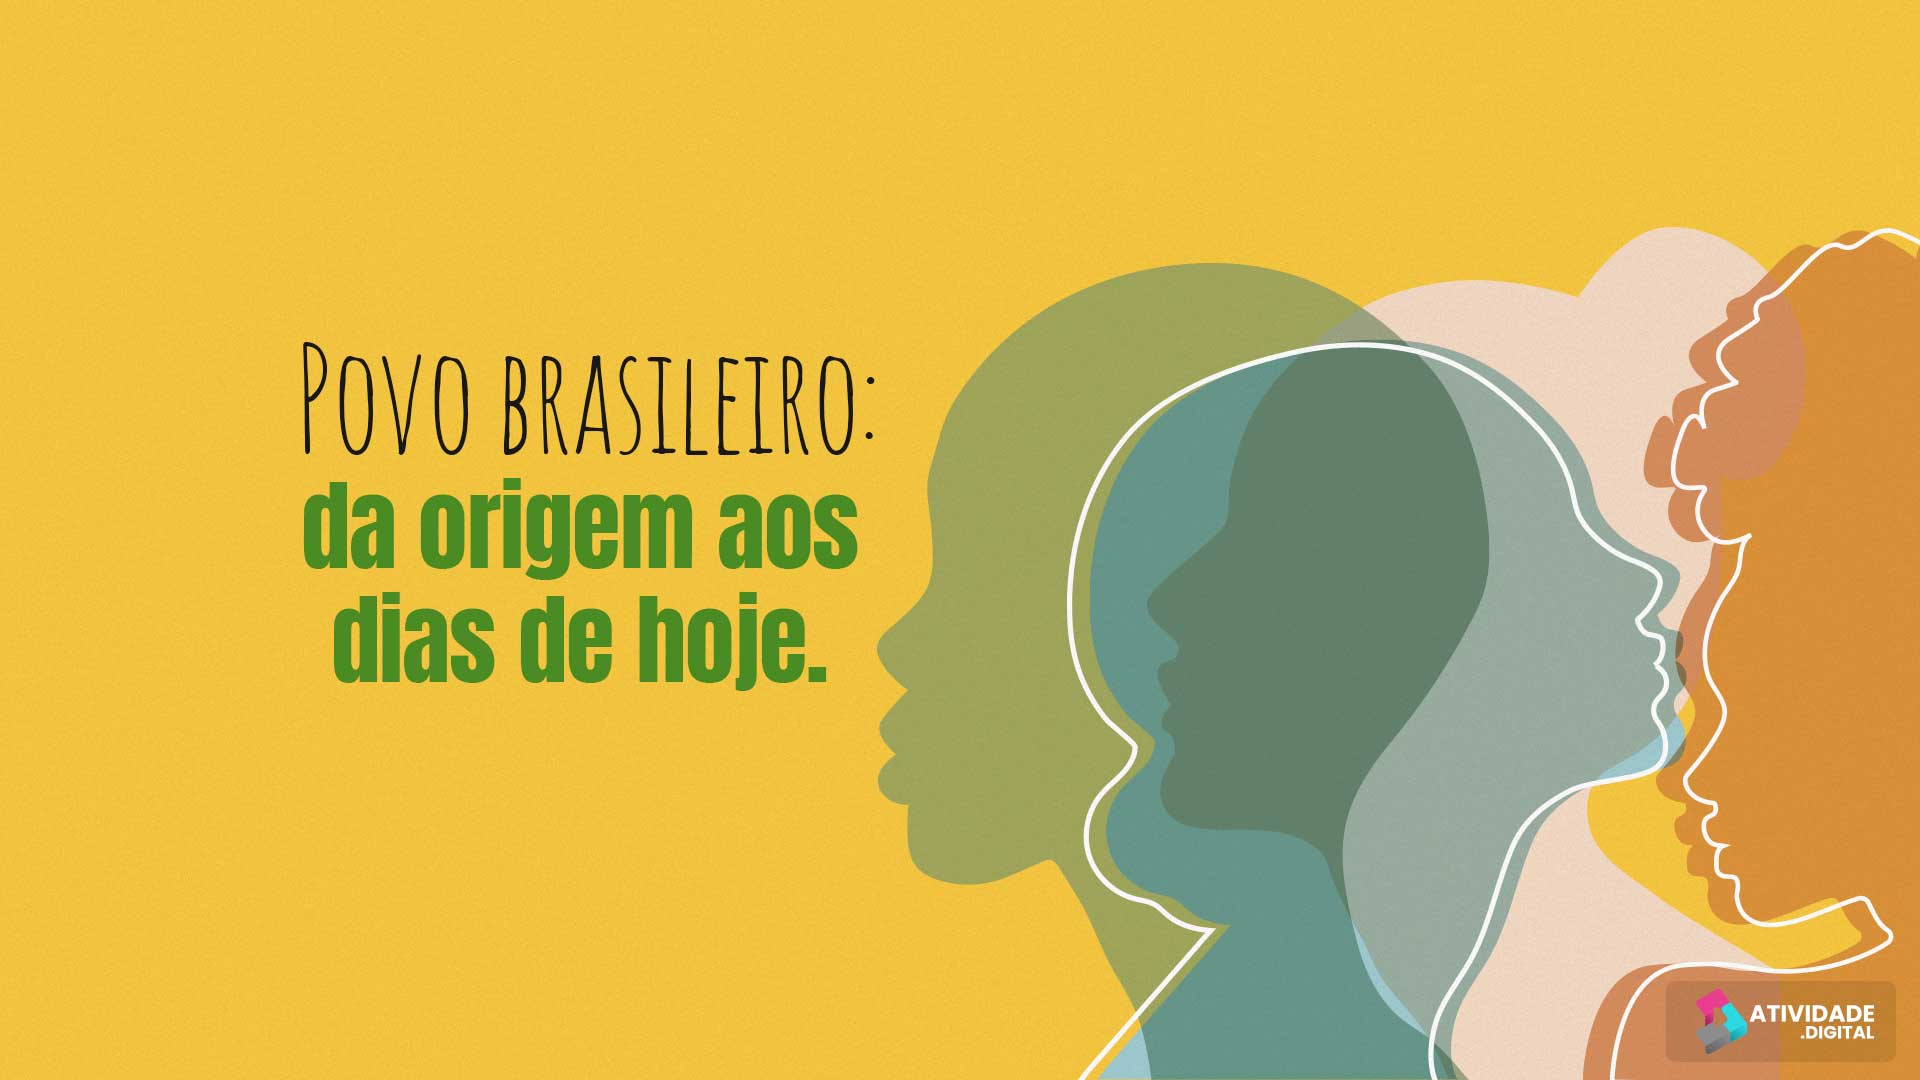 Povo brasileiro: da origem aos dias de hoje